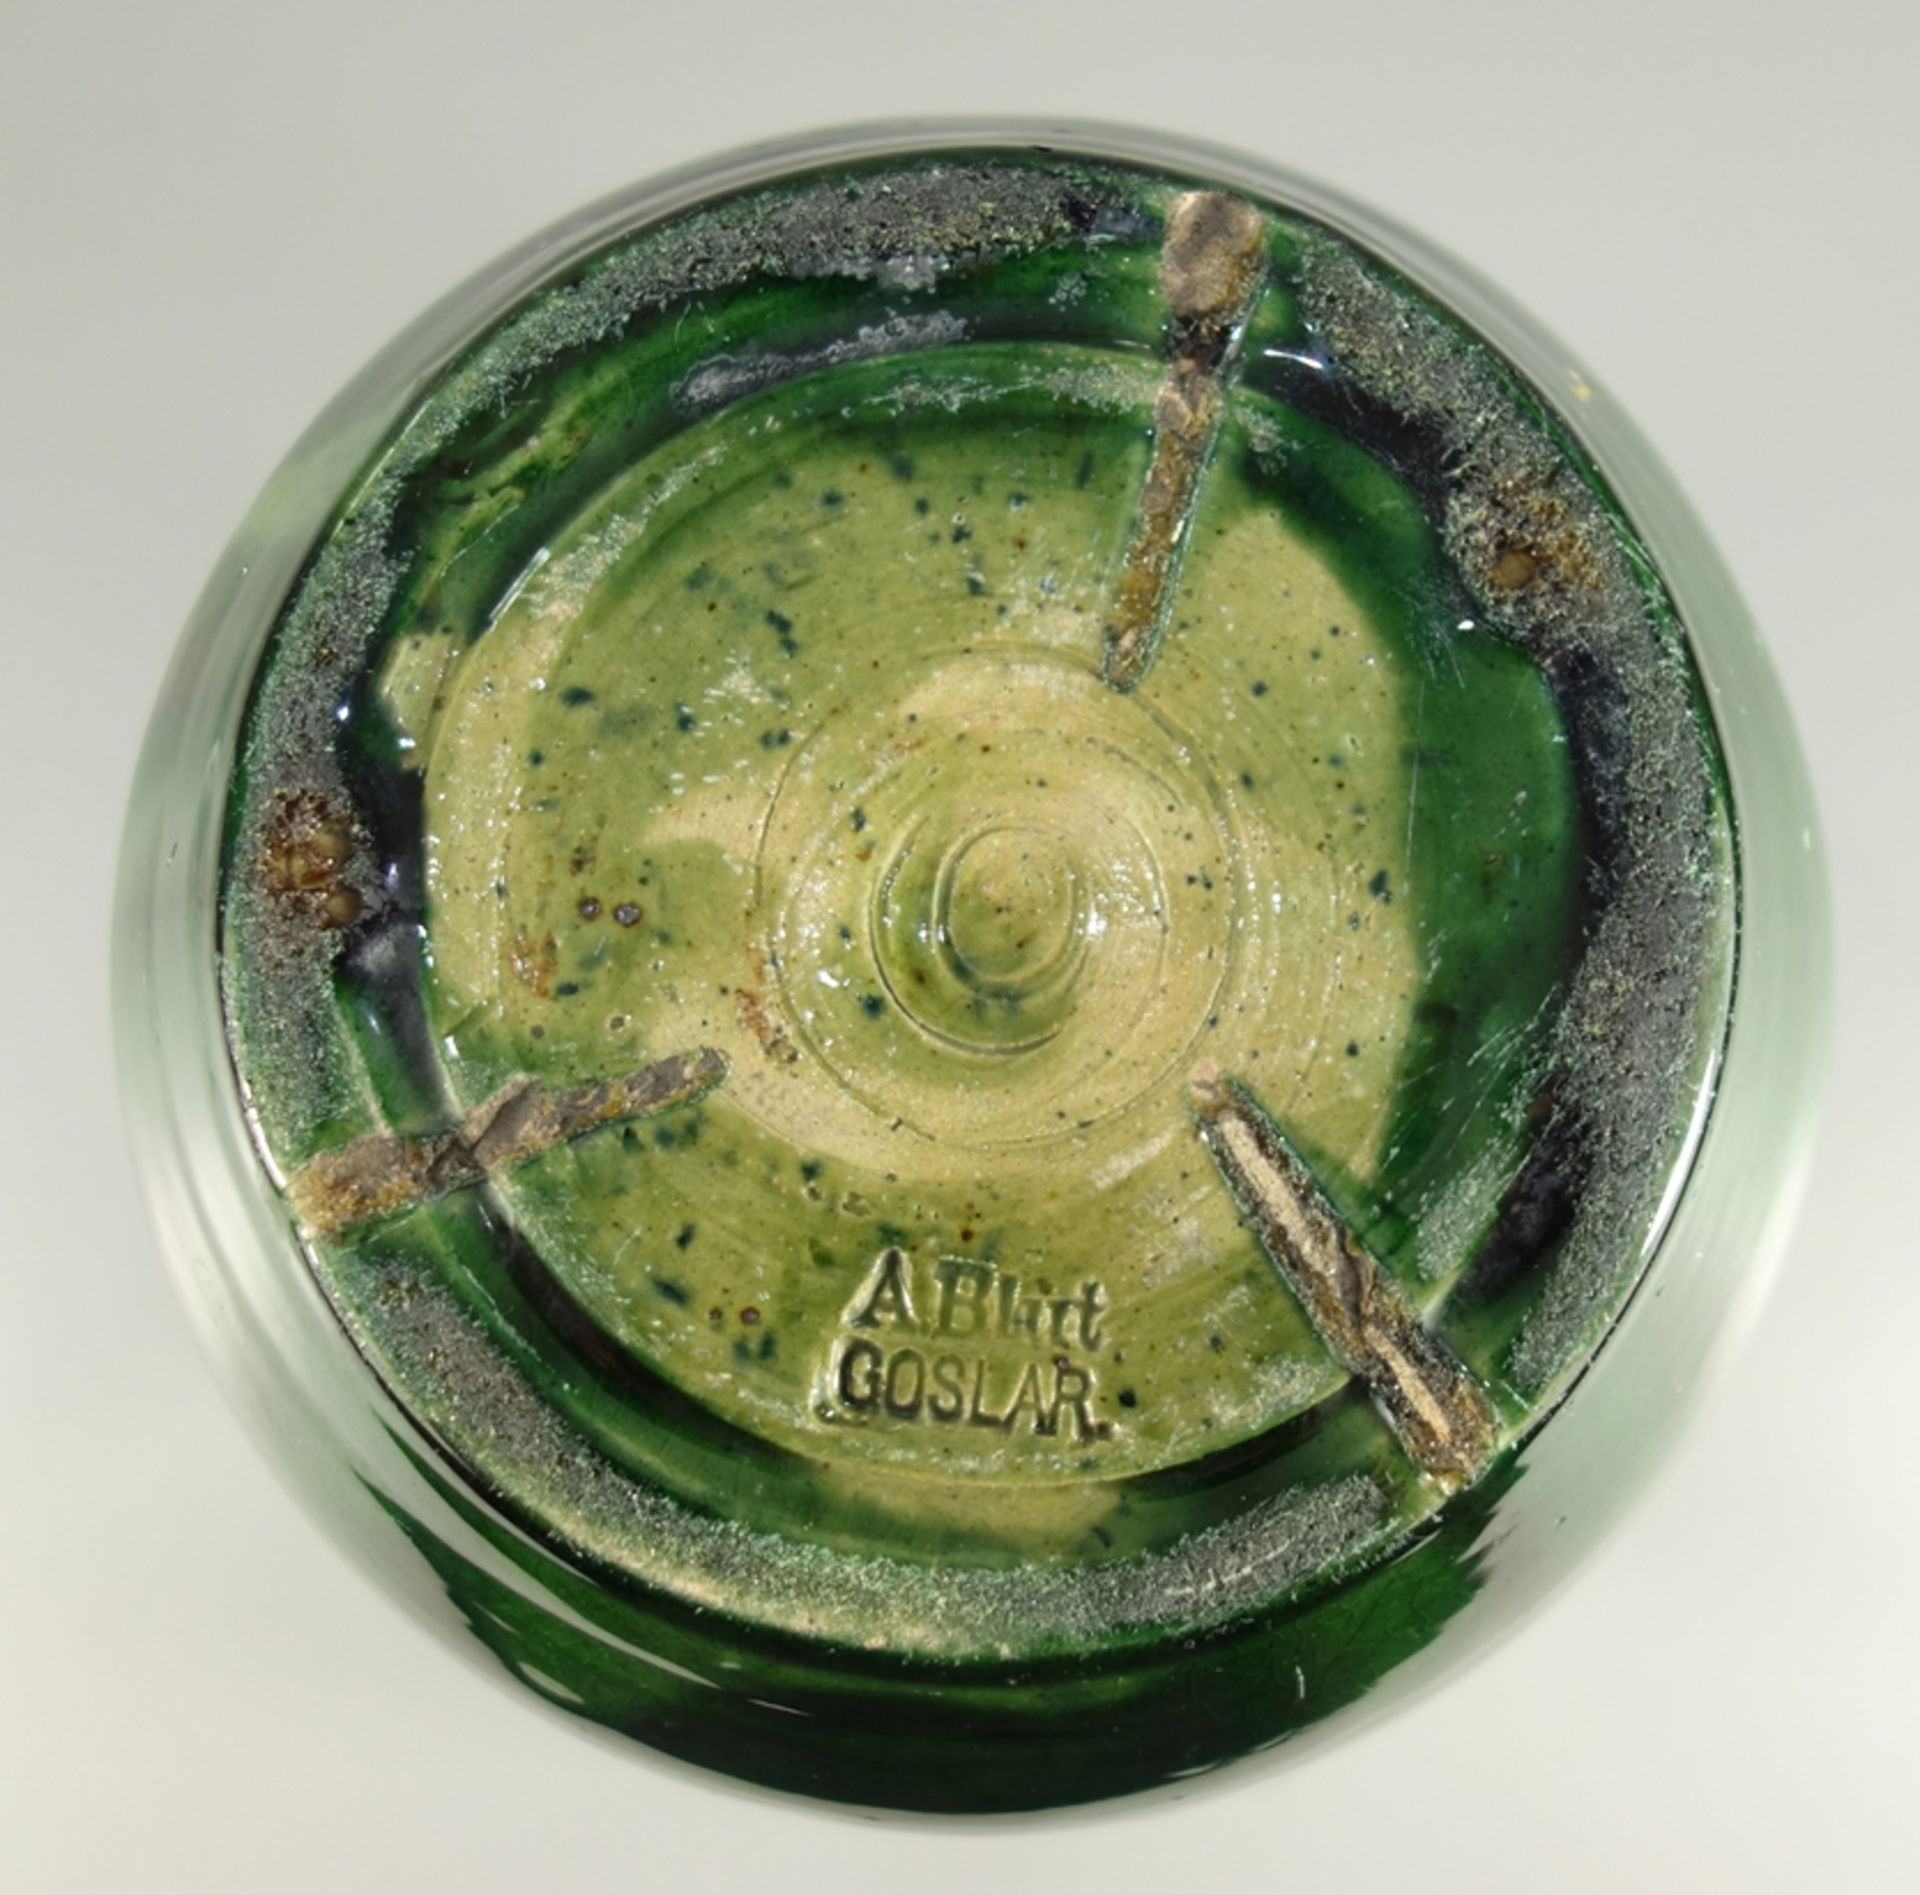 dreihenkelige Vase, Keramik, A.Blut, Goslar, Jugendstil, Anf.20.Jh., H.20cm, gebaucht mit grün-roter - Bild 2 aus 2